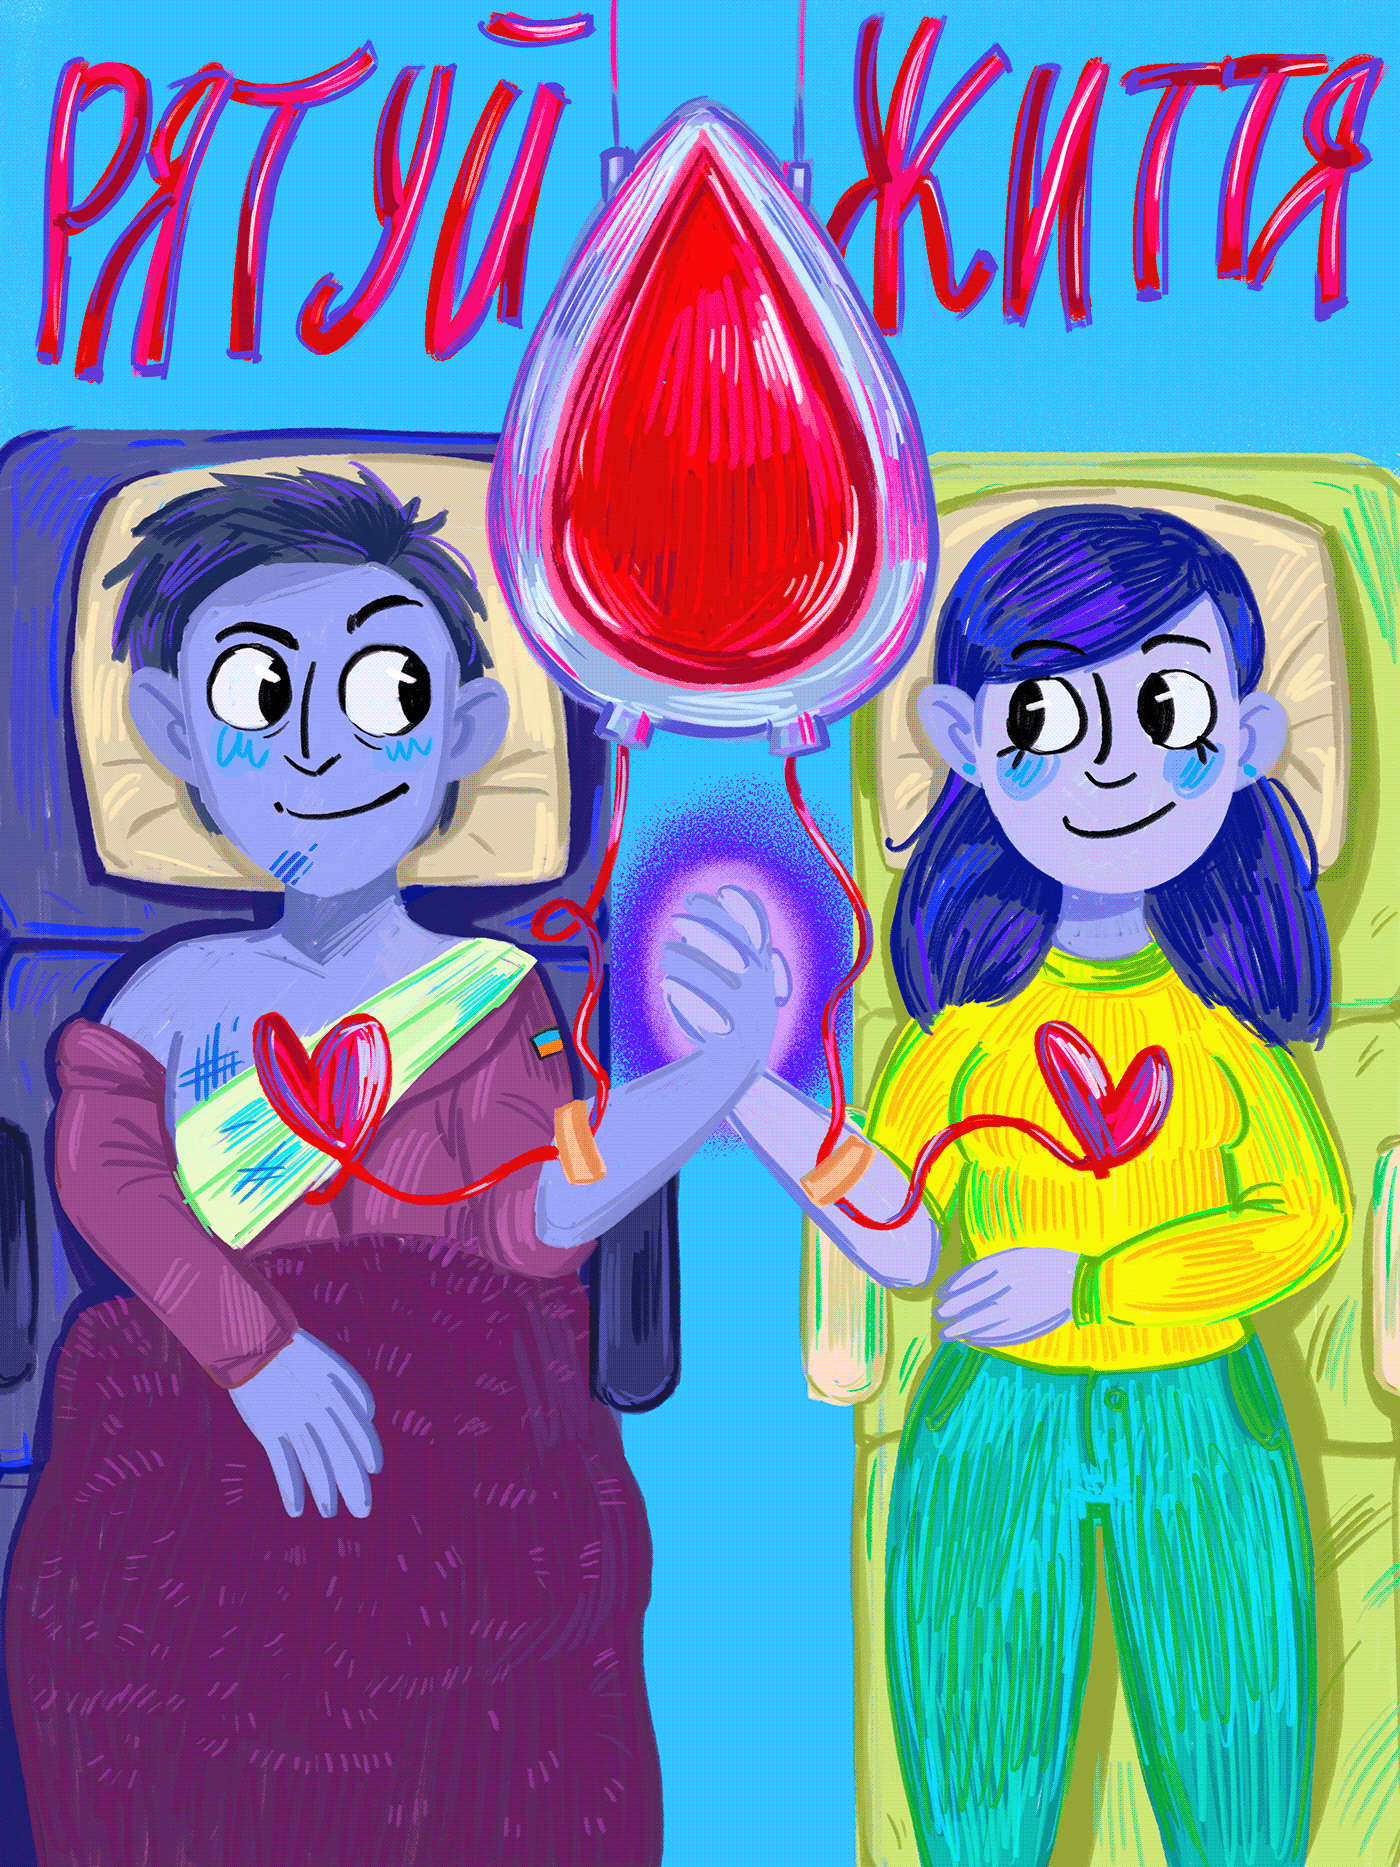 blood donation medical війнавукраїні ілюстрація ILLUSTRATION  донорство